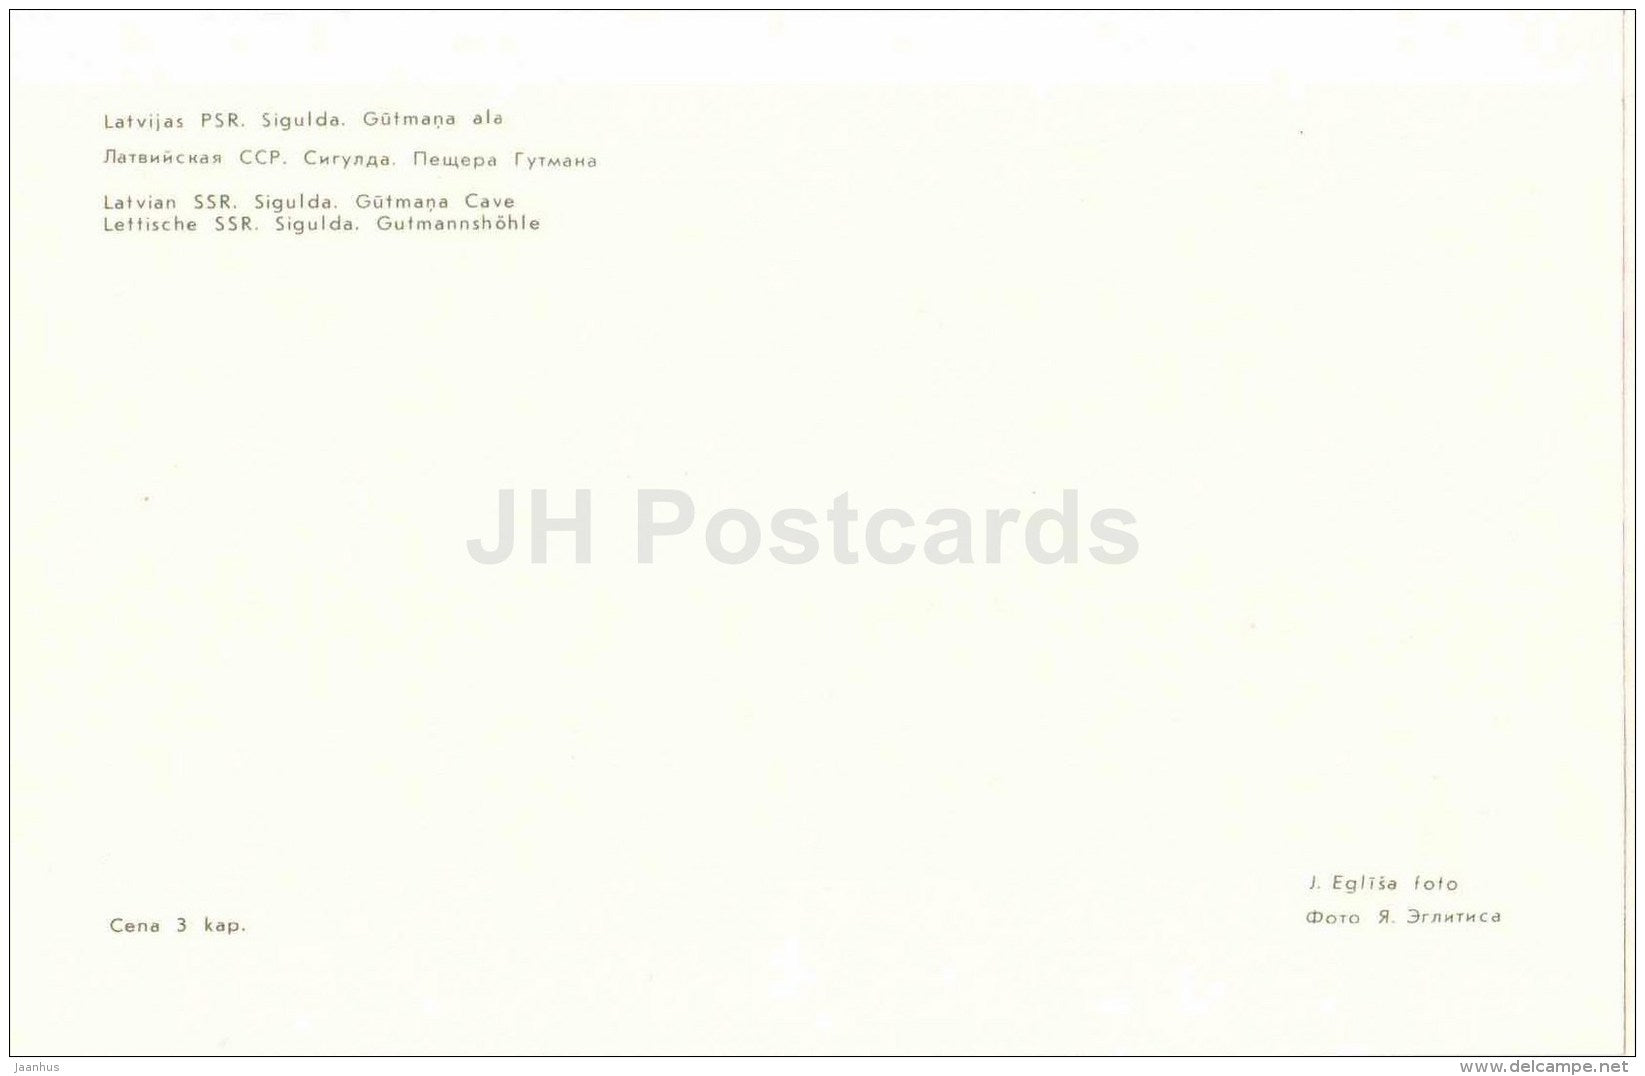 Gutmana Cave - Sigulda - 1981 - Latvia USSR - unused - JH Postcards